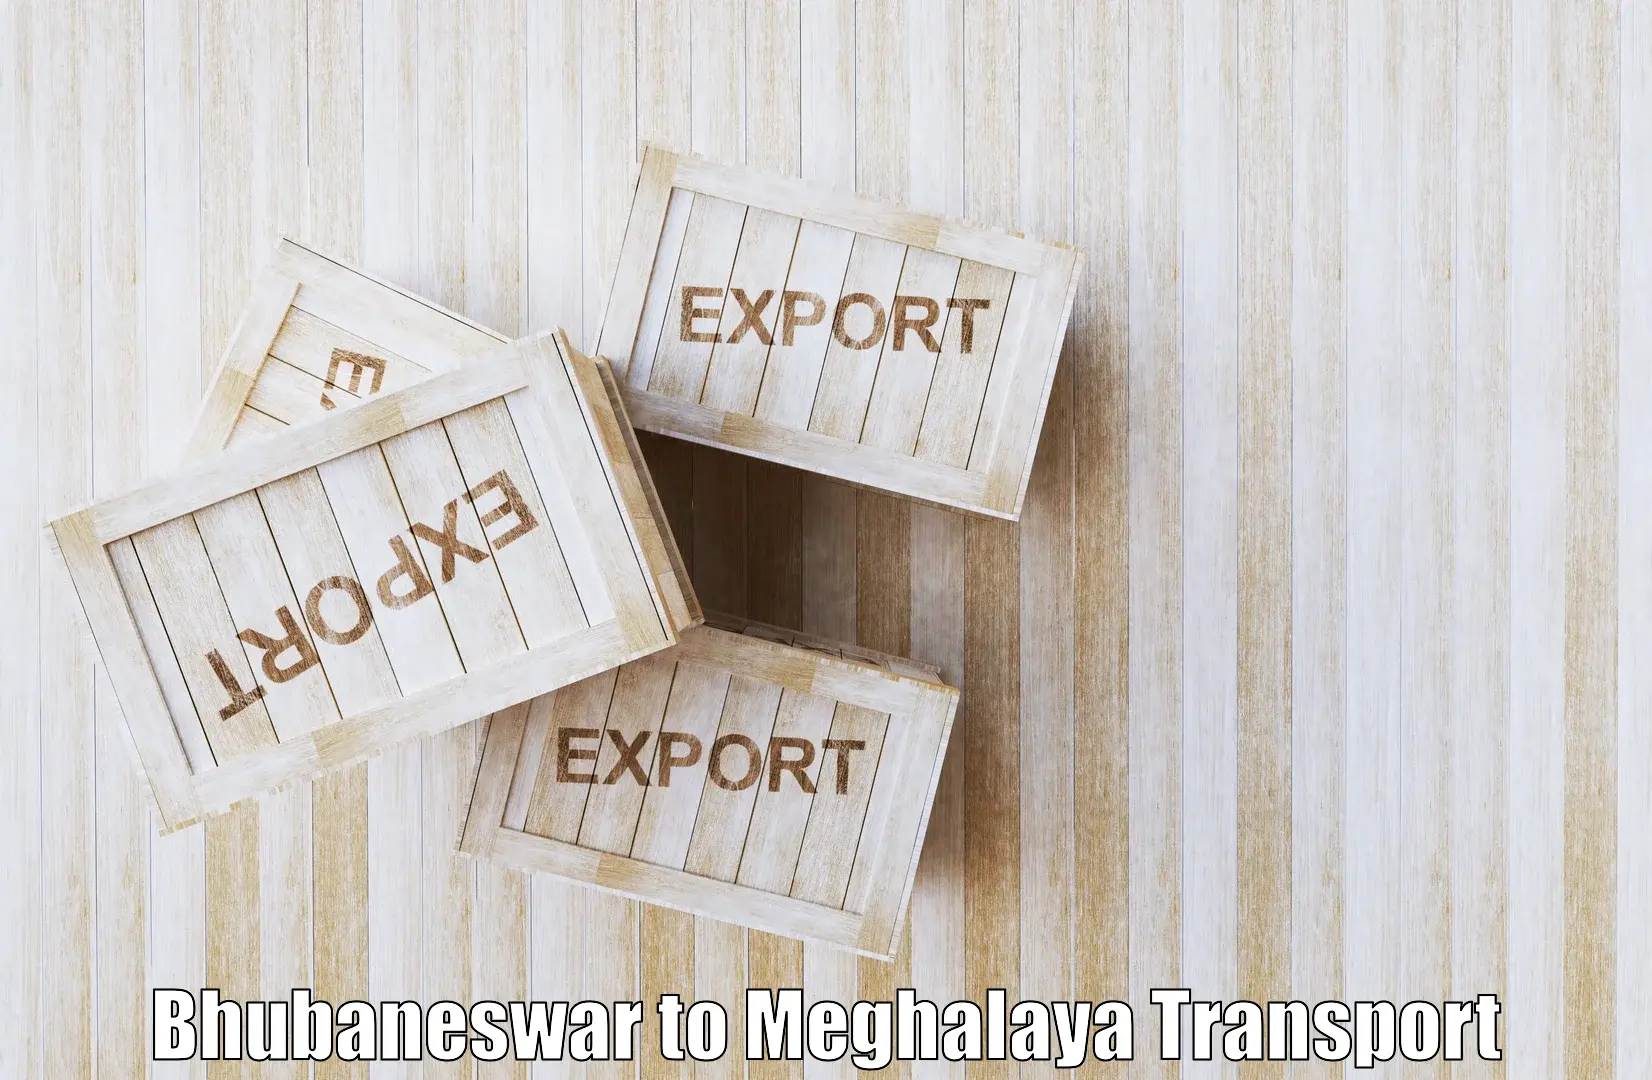 Two wheeler parcel service Bhubaneswar to NIT Meghalaya